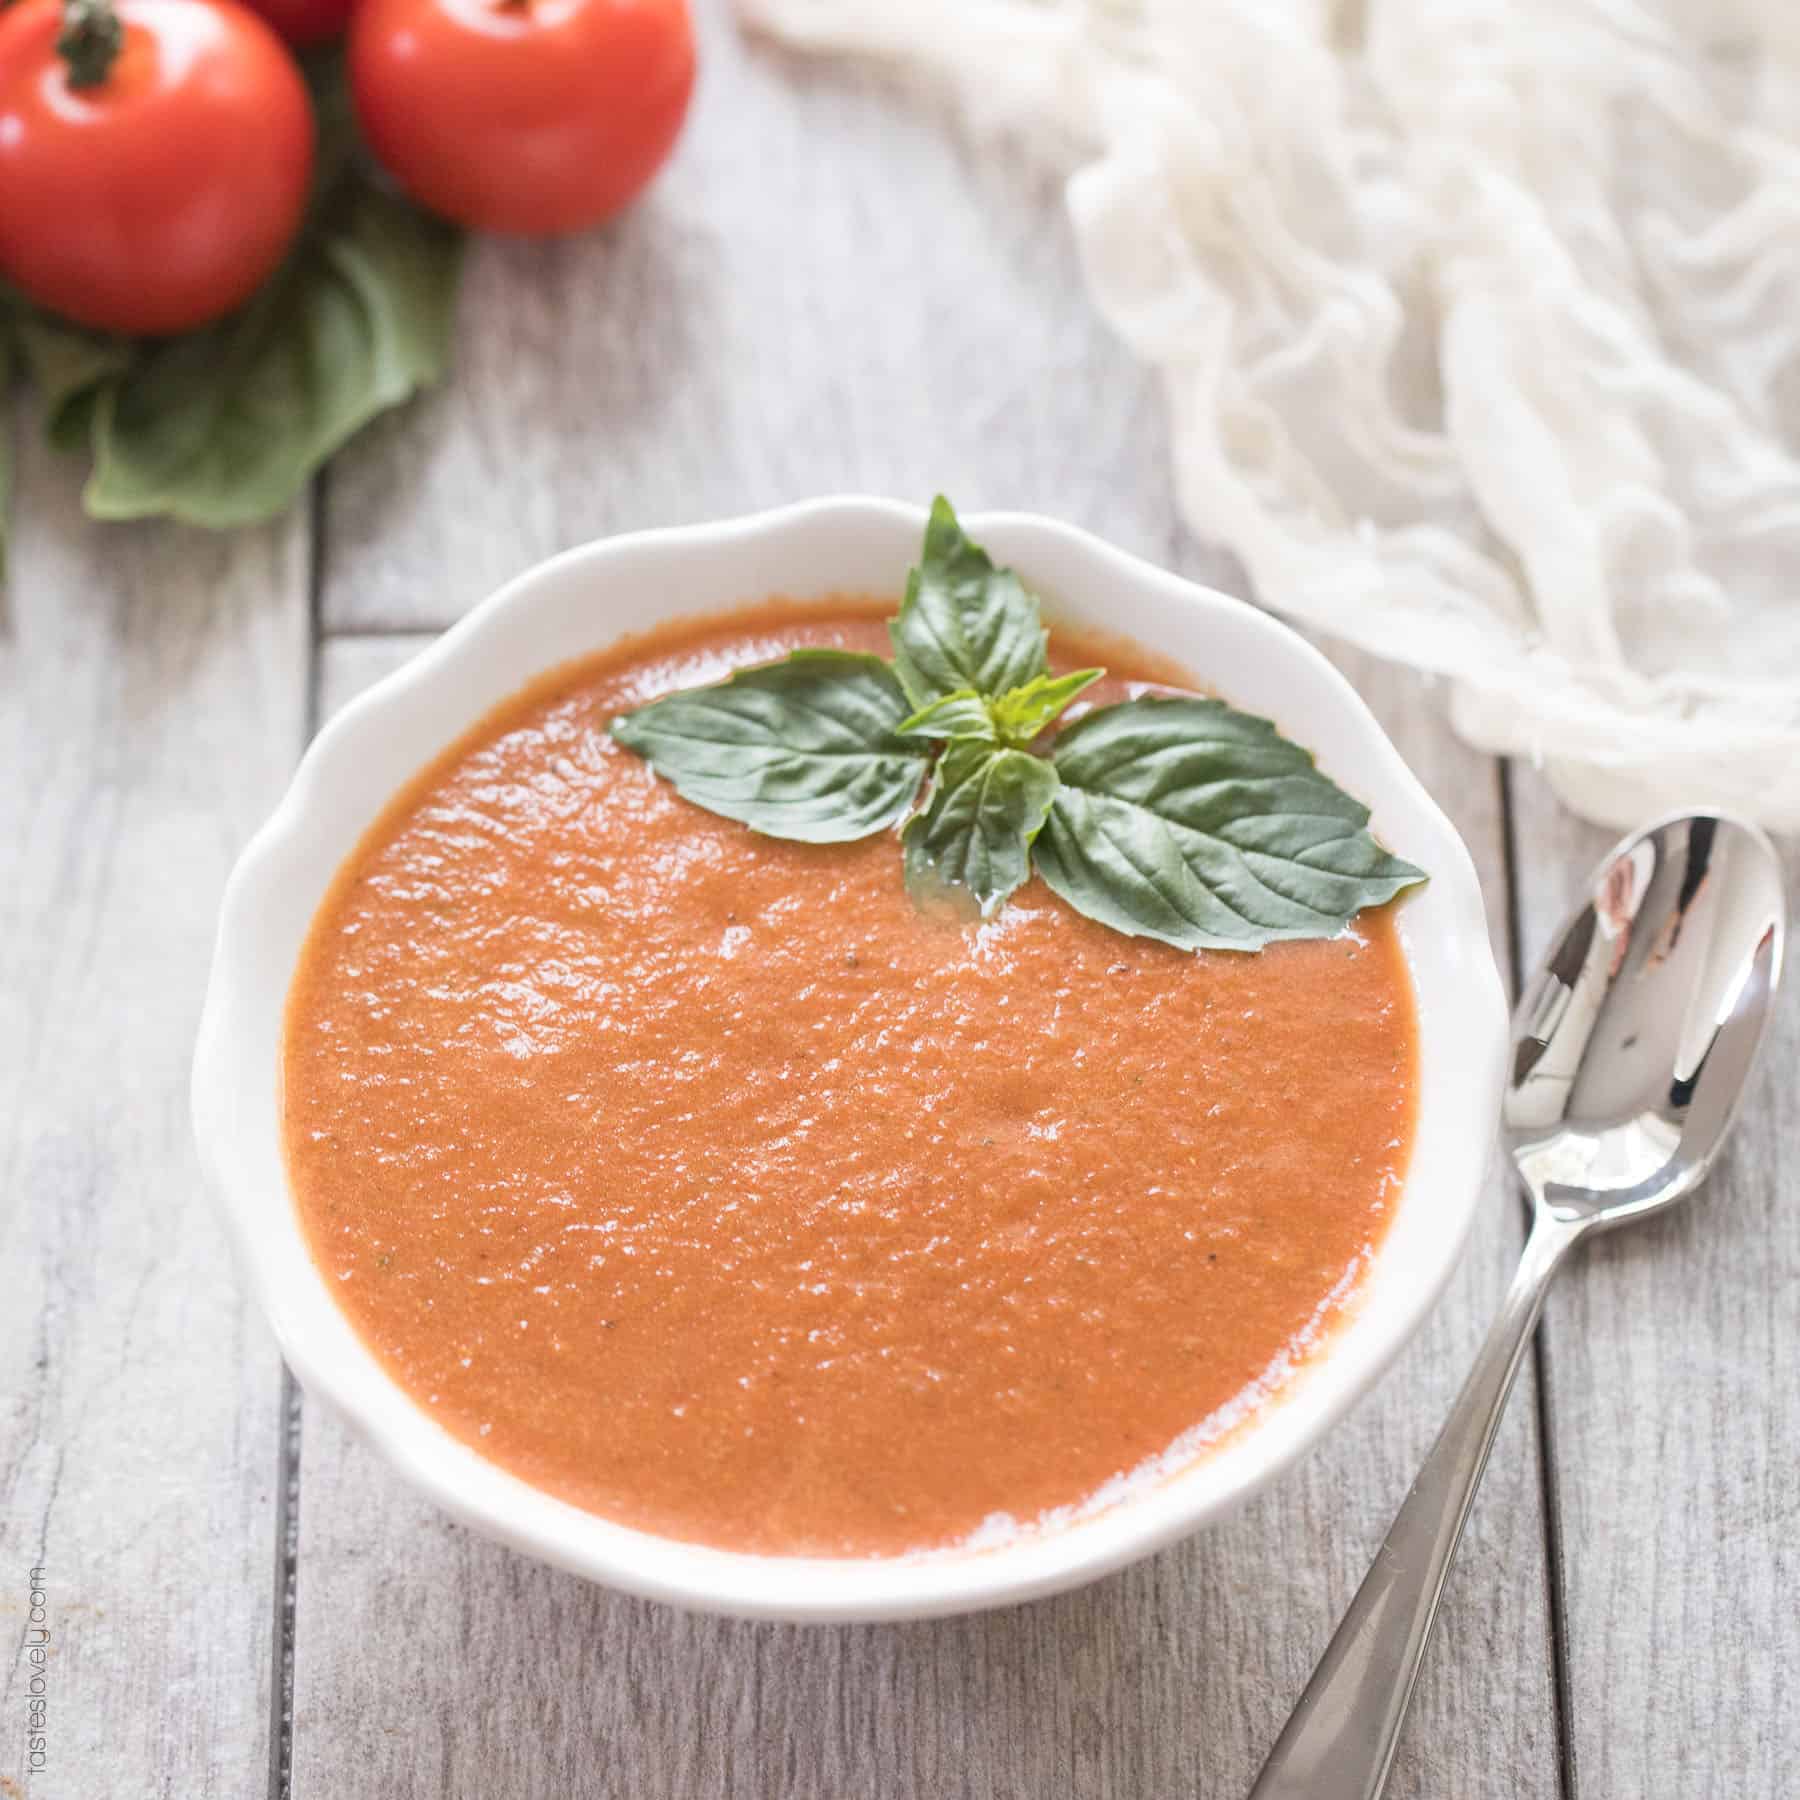 https://www.tasteslovely.com/wp-content/uploads/2018/01/Paleo-Whole30-Tomato-Soup-tasteslovely.com_.jpg